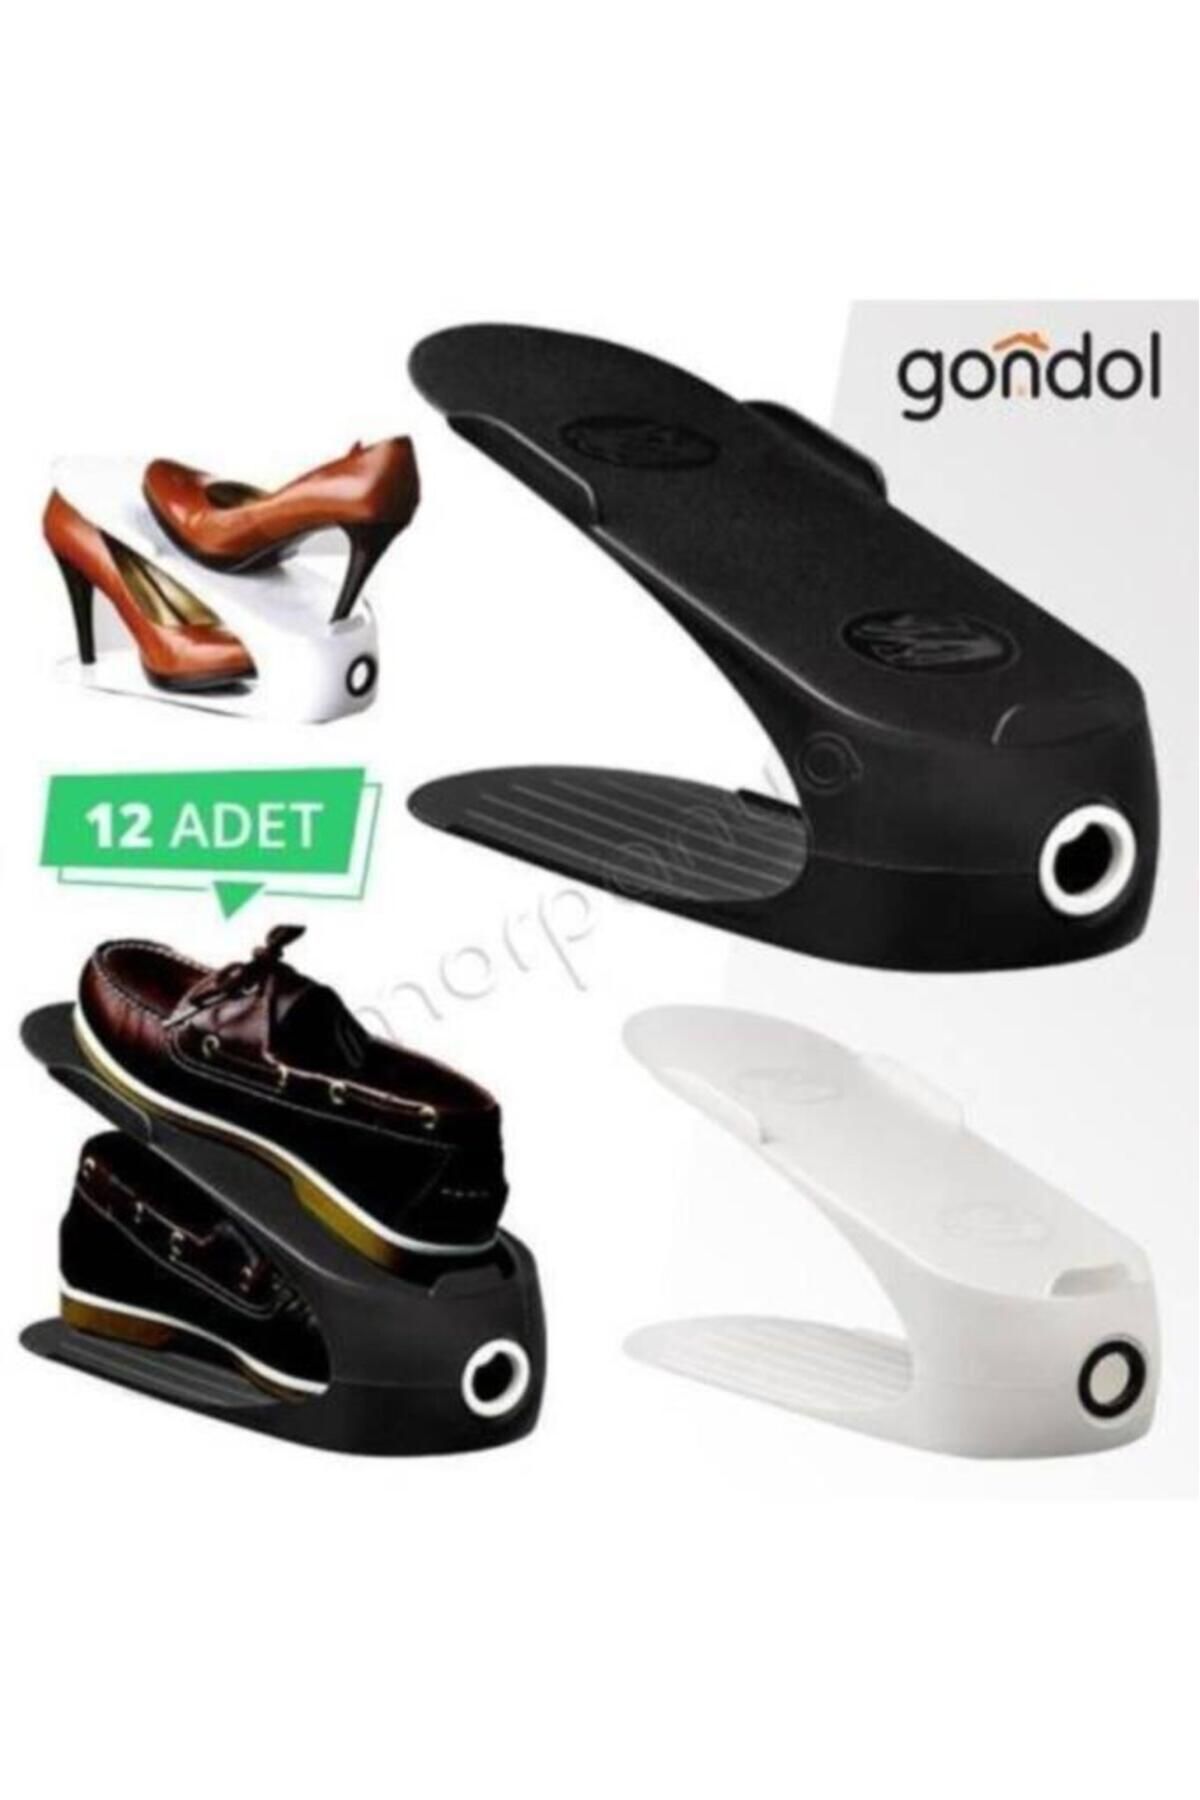 Gondol Ayakkabı Rampası 12 Adet Tekli Rampa Ayakkabılık Düzenleyici 1.sınıf Kokusuz Organizer Fma006303